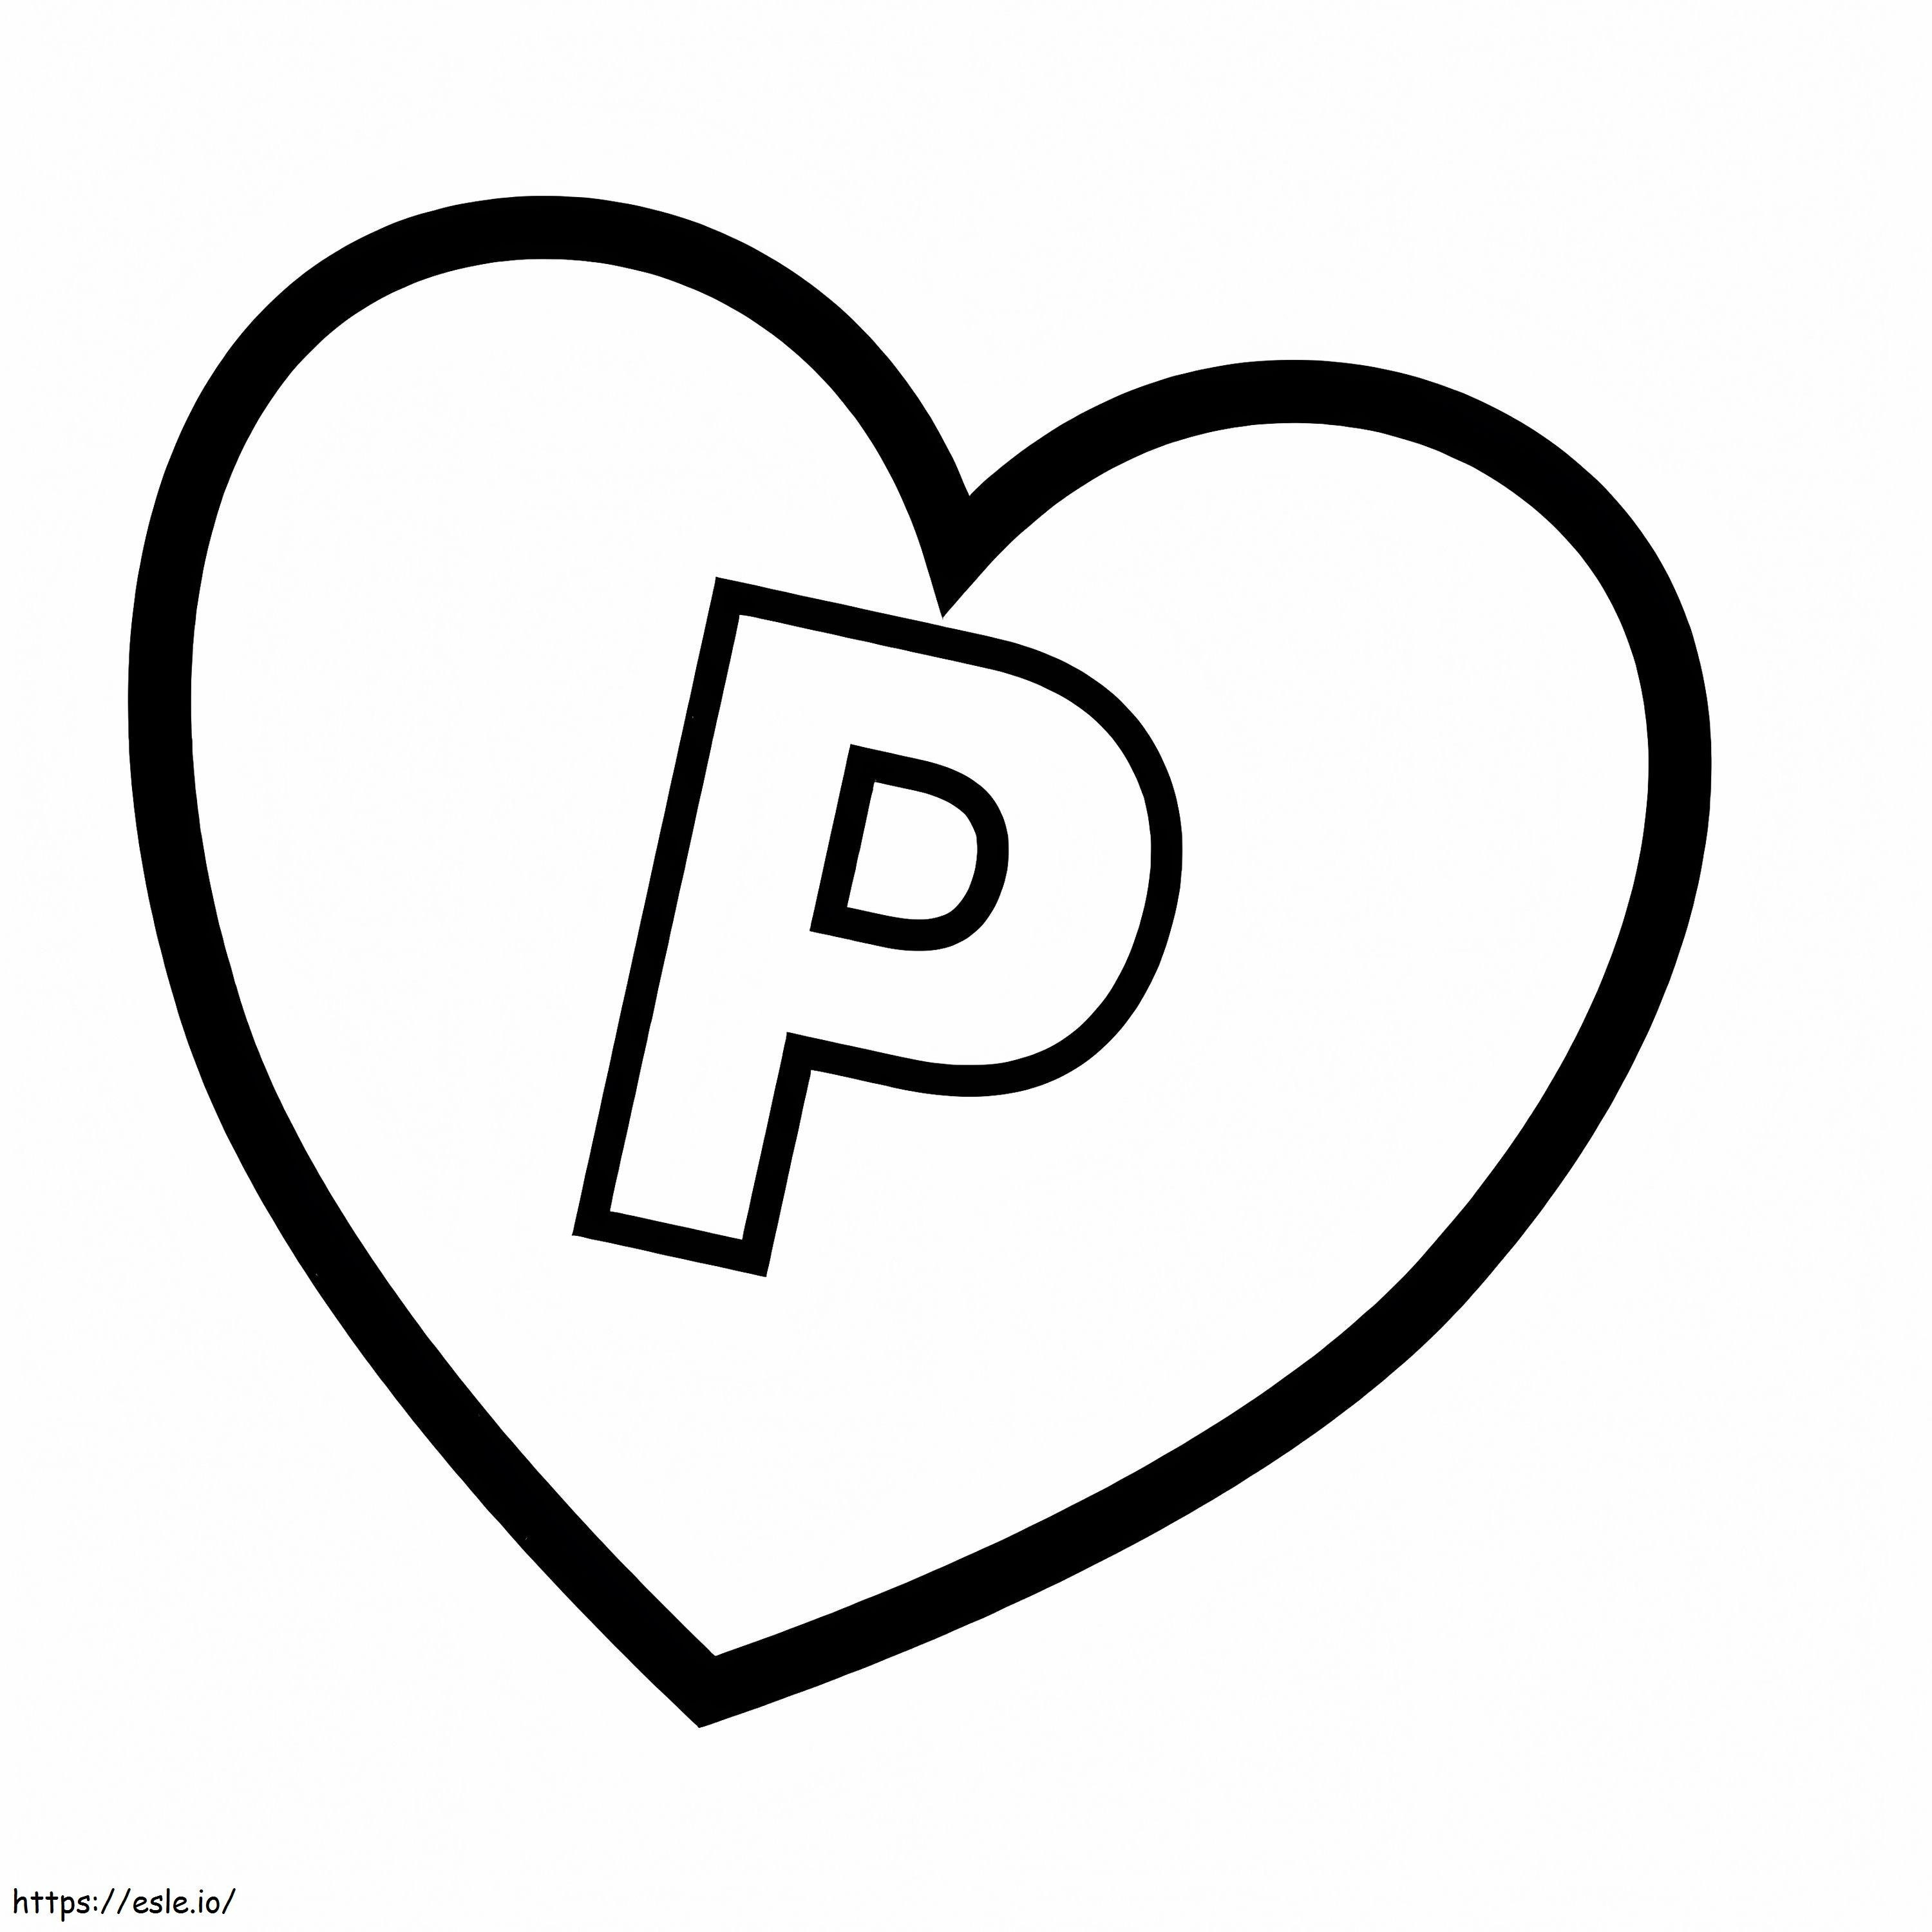 Buchstabe P im Herzen ausmalbilder